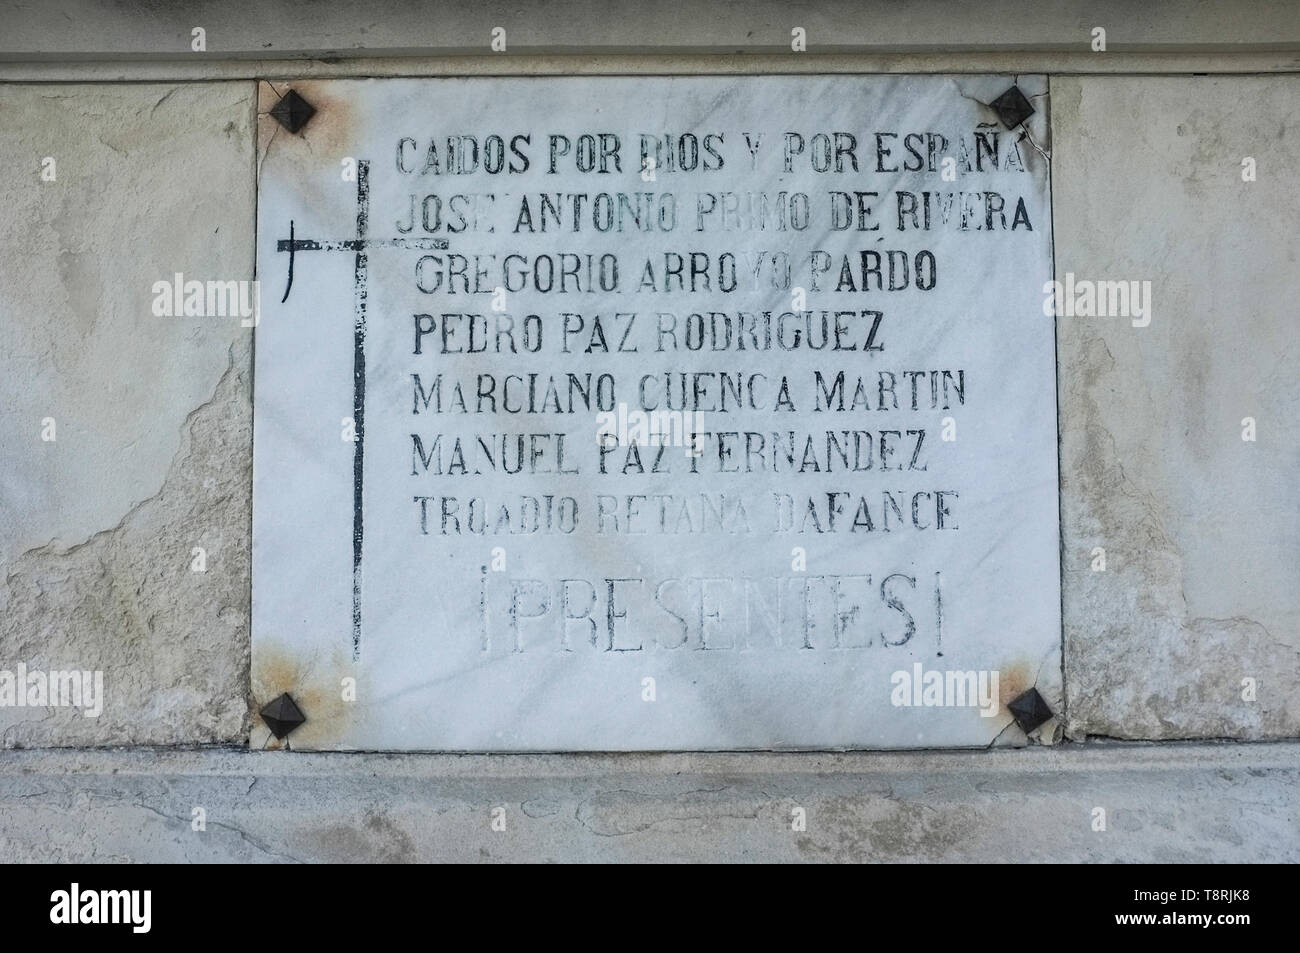 Brunete, Spanien - Jun 3rd, 2017: Schlacht von Brunete Gedenktafel. Symbole die Ehrung der Diktatur des Diktators Francisco Franco, wa Stockfoto